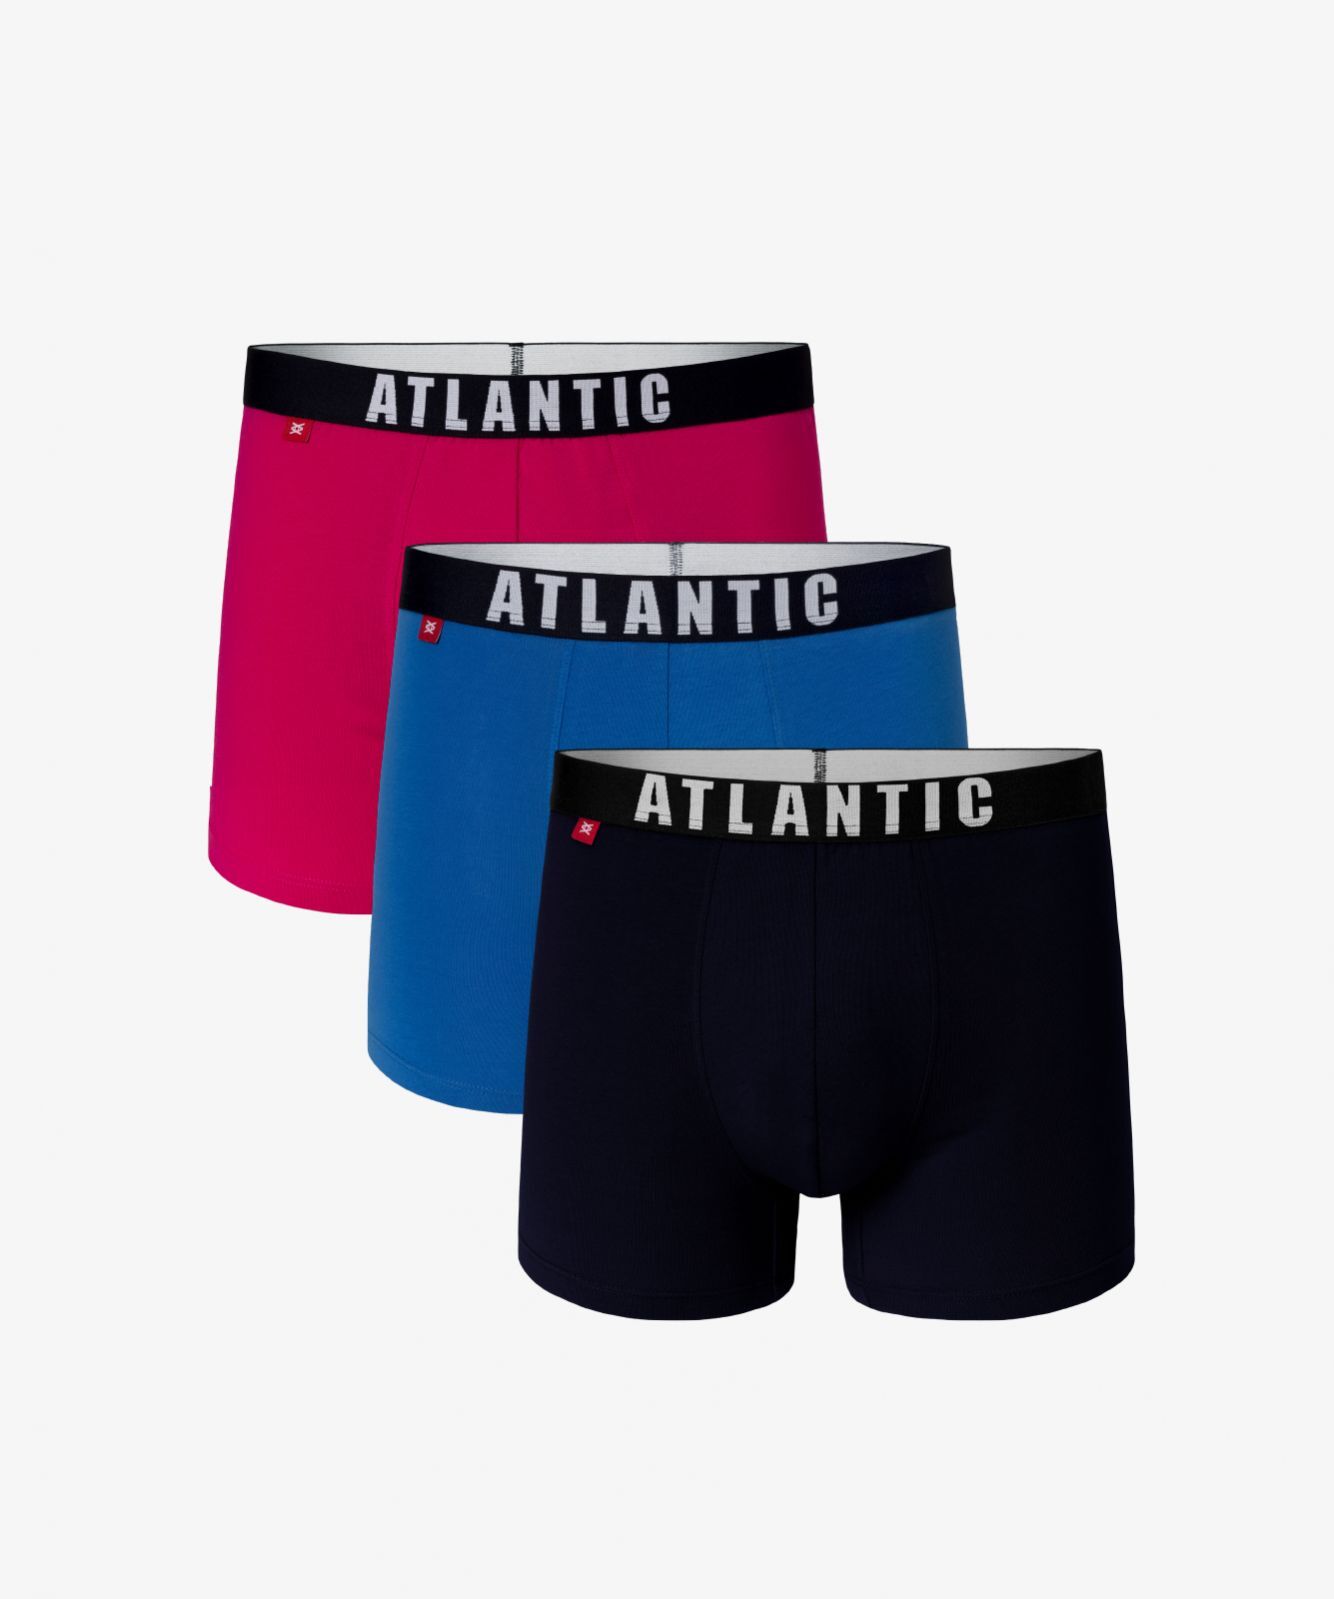 Мужские трусы шорты Atlantic, набор из 3 шт., хлопок, розовые + бирюзовые + темно-синие, 3MH-011